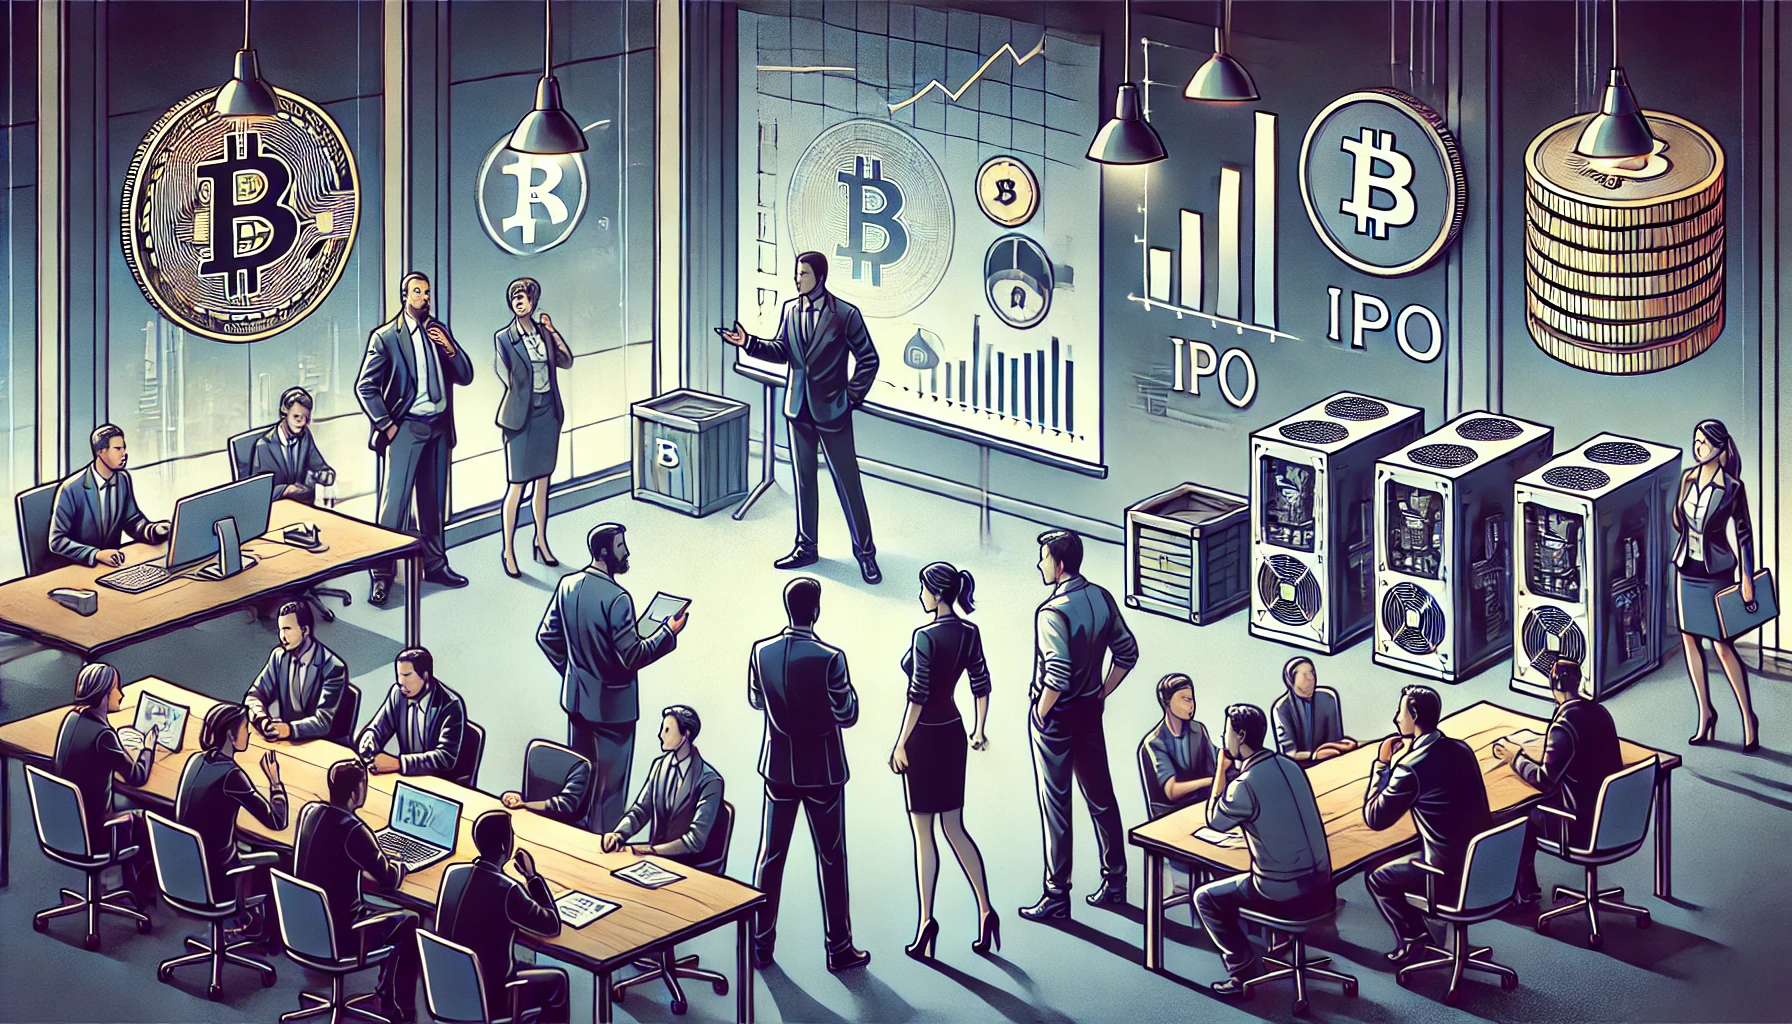 Swan Bitcoin stoppt IPO-Pläne und reduziert Personal nach Einstellung der Mining-Aktivitäten